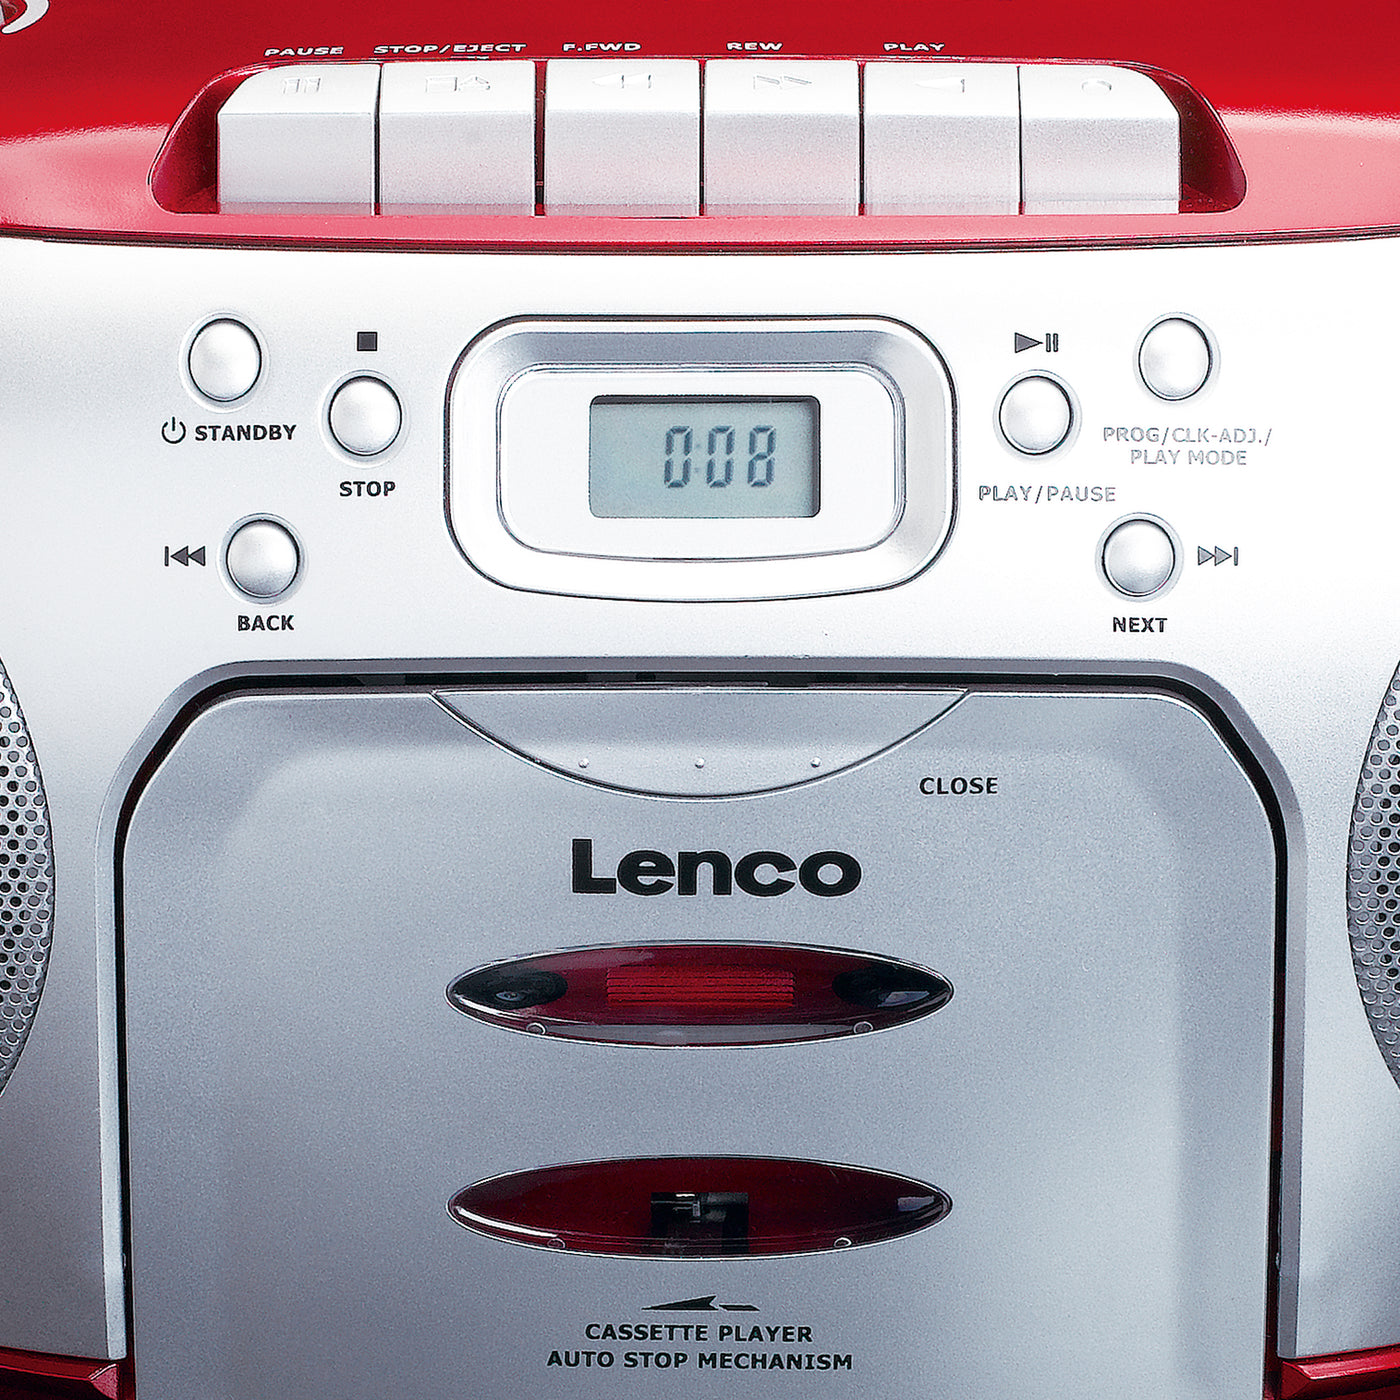 LENCO SCD-410RD - Radio cassette, CD, player - Red